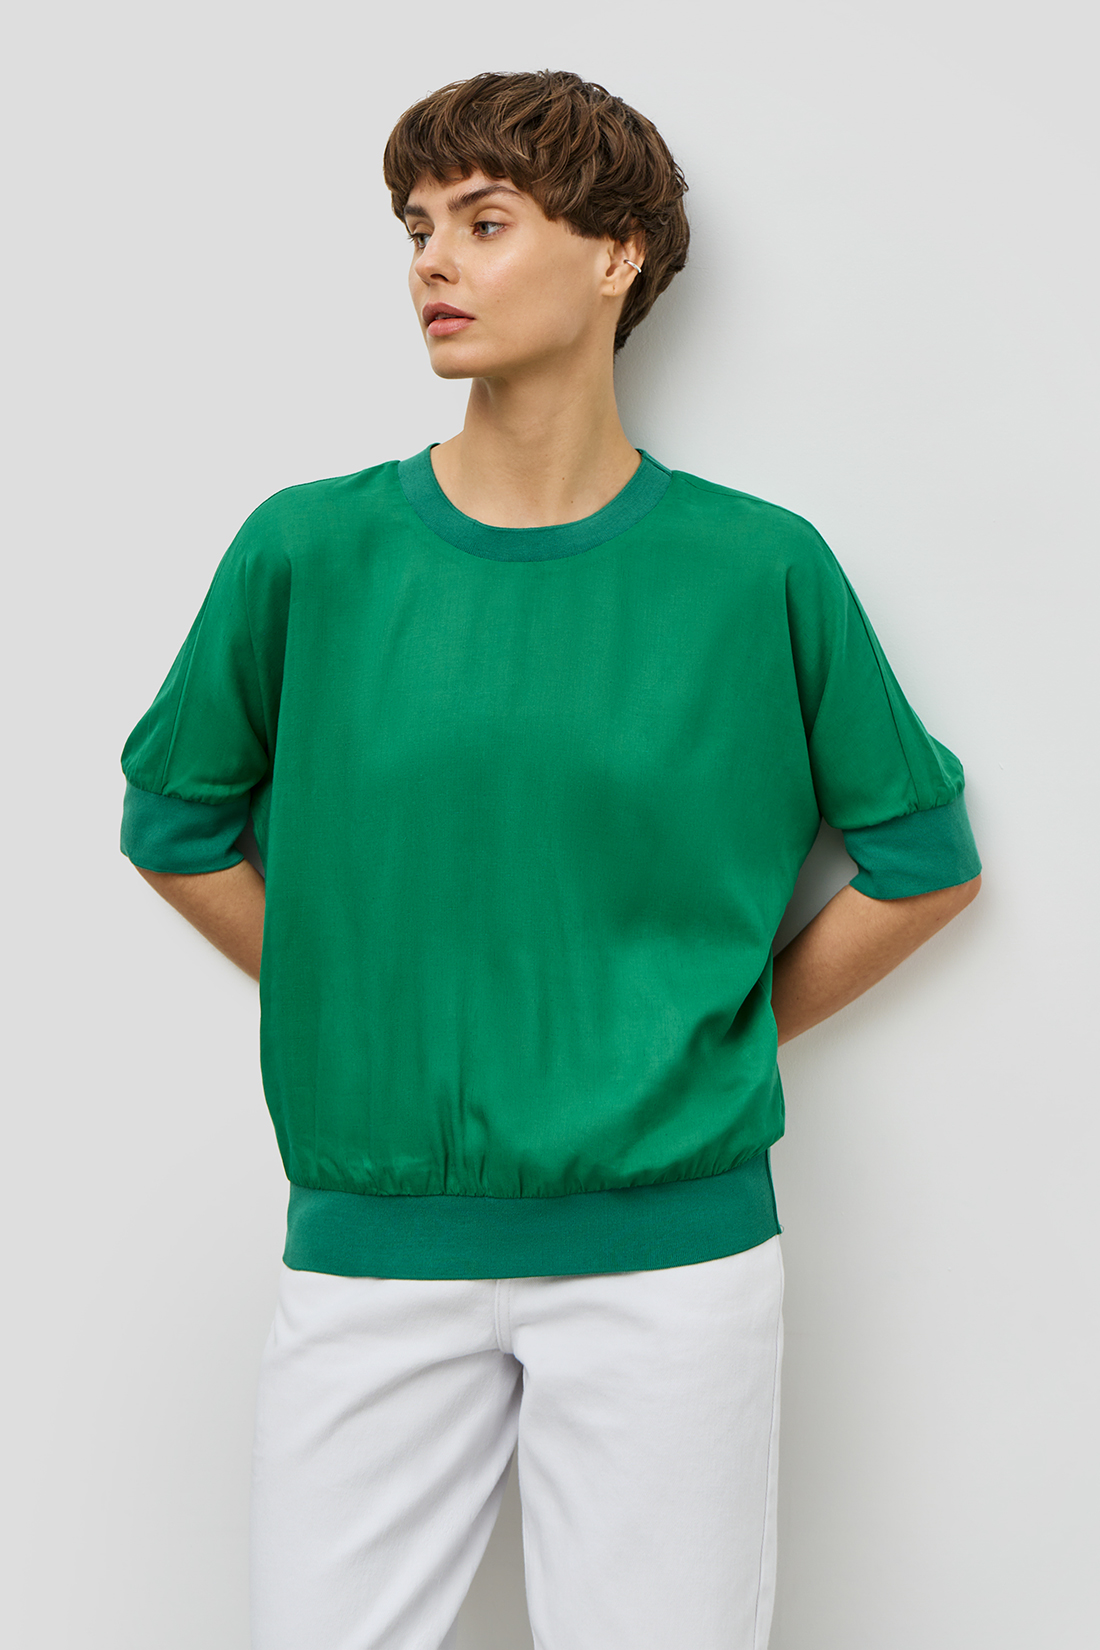 Блузка (арт. baon B1923027), размер S, цвет зеленый